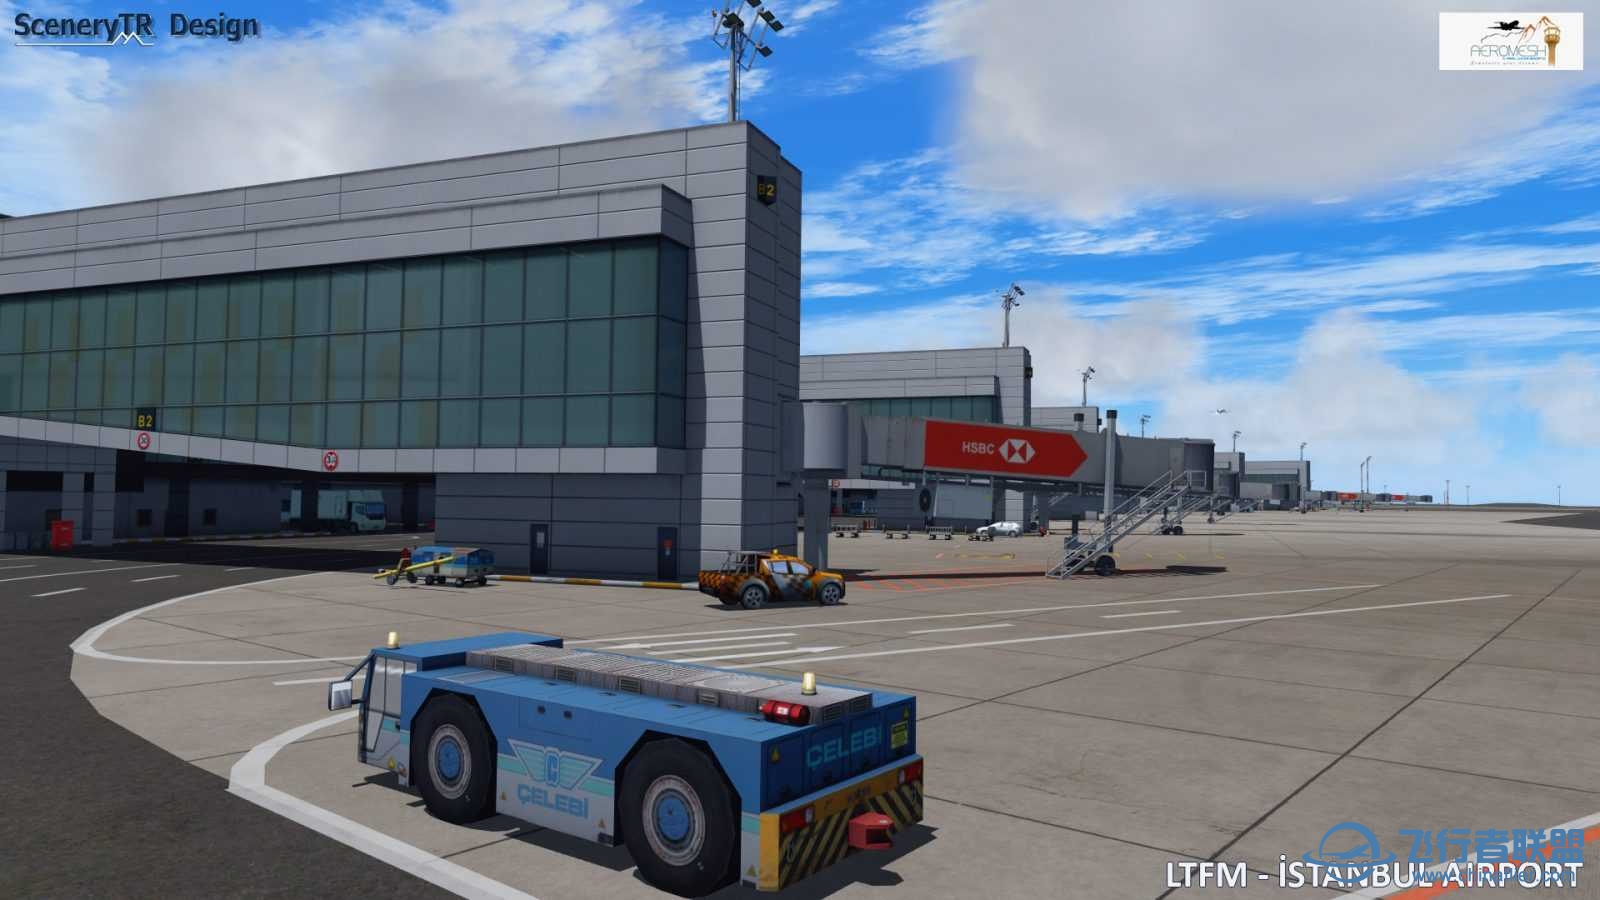 LTFM 伊斯坦布尔机场 P3DV5预览-5472 